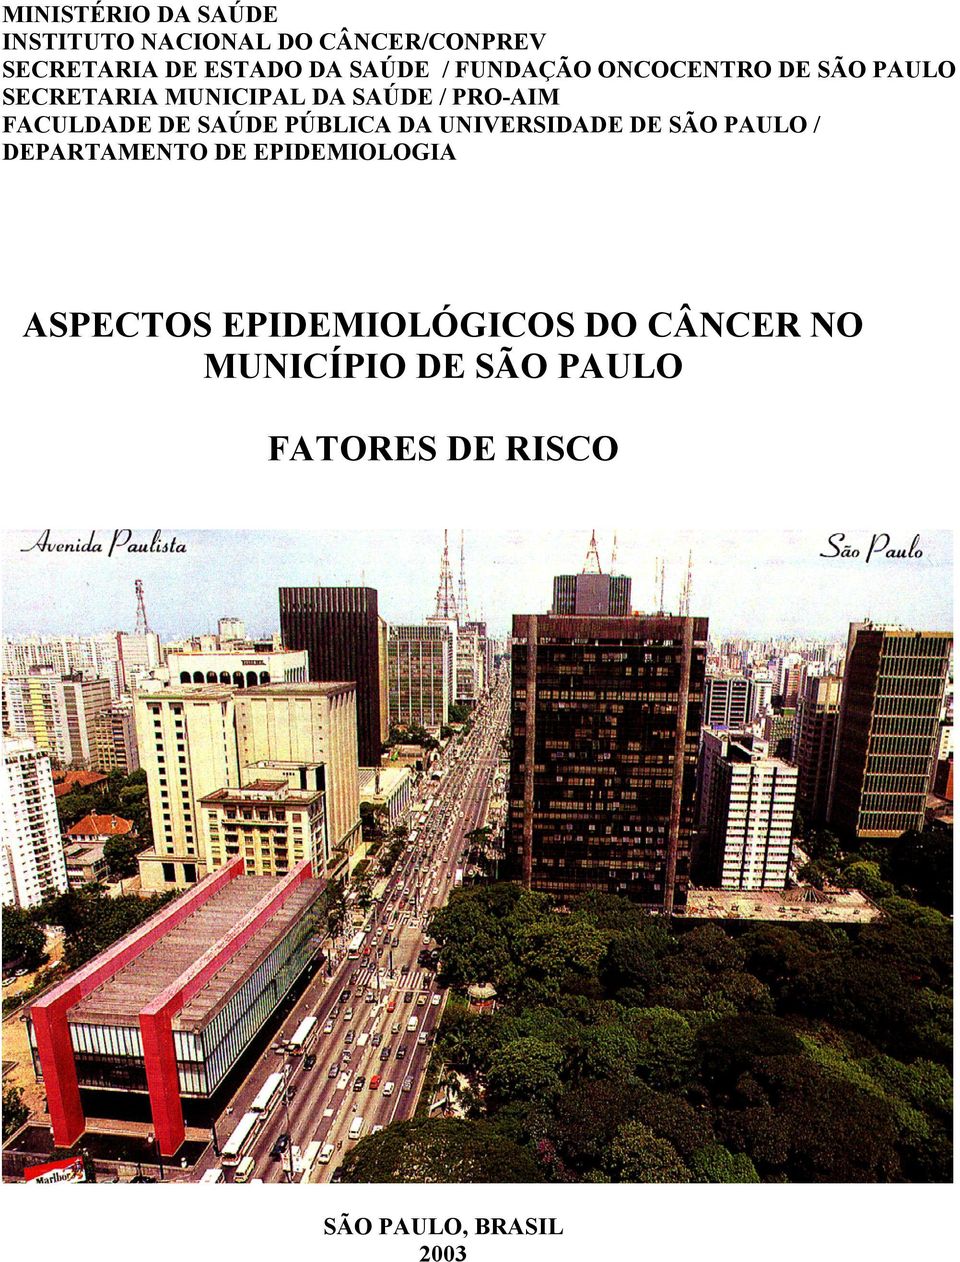 SAÚDE PÚBLICA DA UNIVERSIDADE DE SÃO PAULO / DEPARTAMENTO DE EPIDEMIOLOGIA ASPECTOS